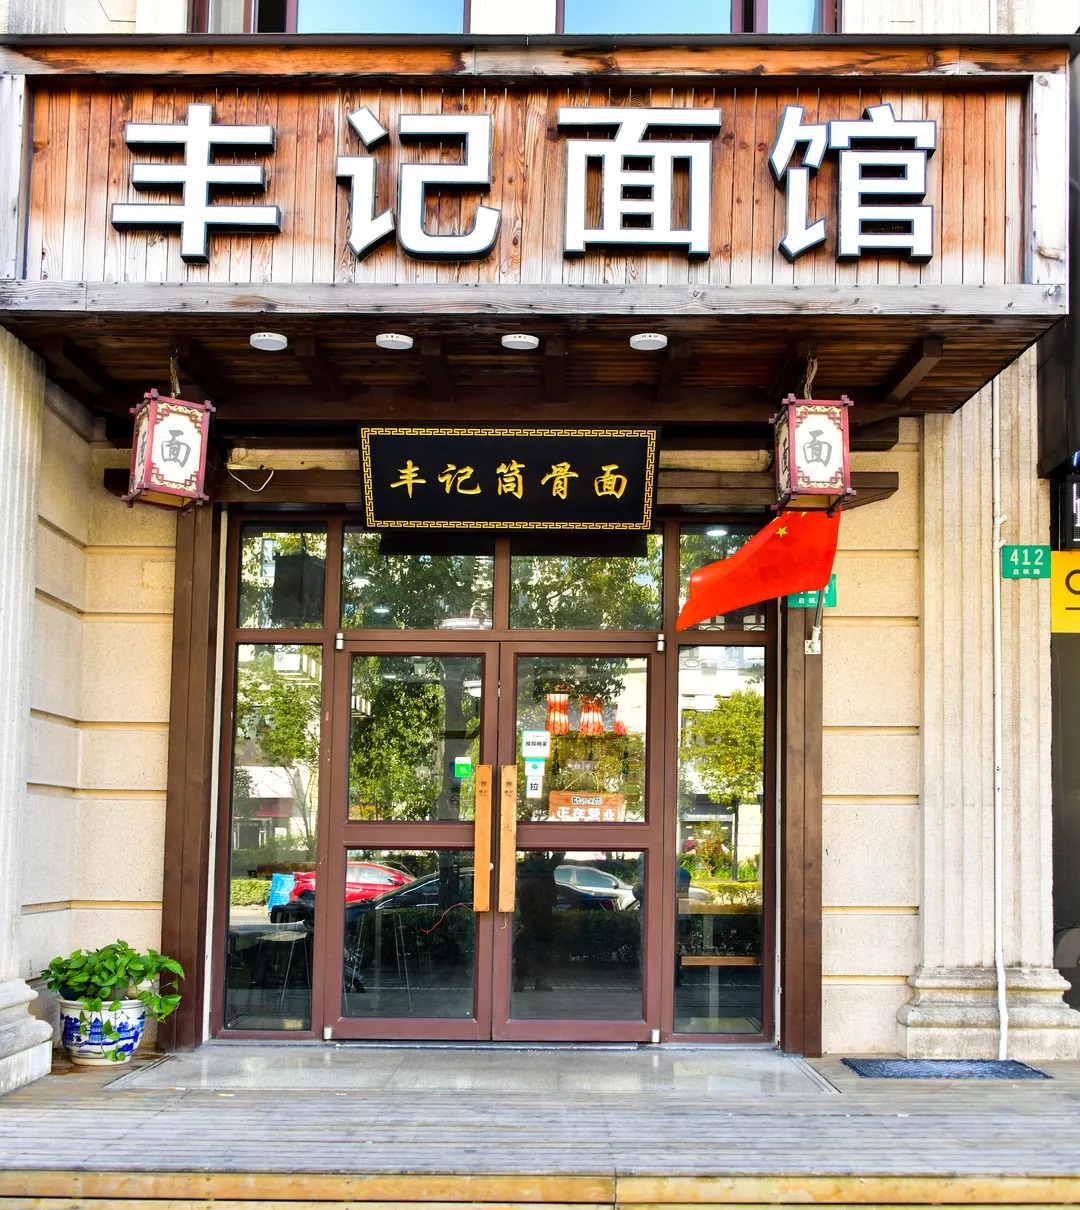 俱进面馆想吃本帮面就来这儿~上海小囡熟悉的八仙桌,老上海的酱油汤底